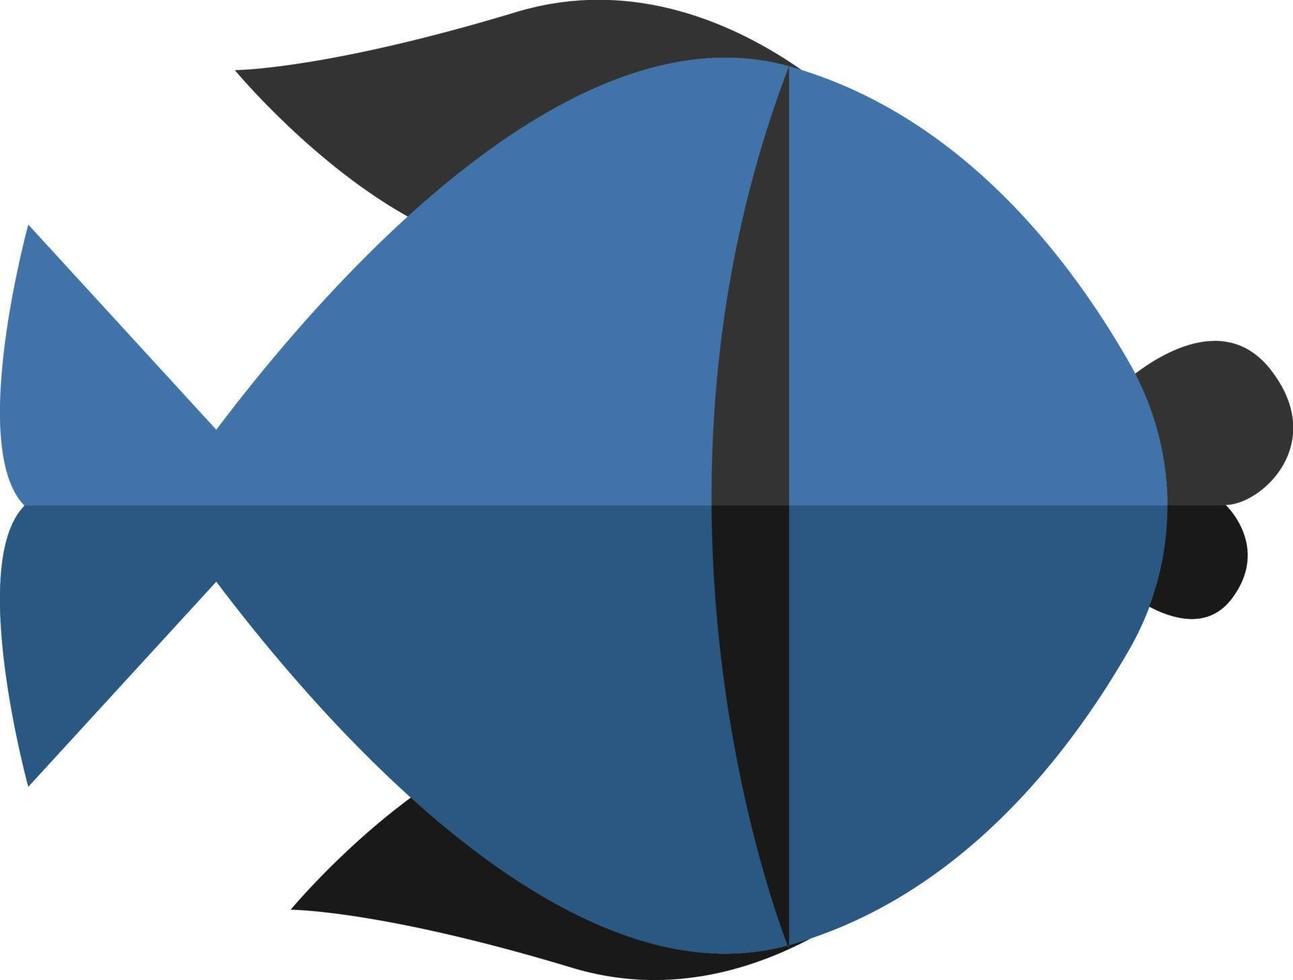 Pescado negro y azul, ilustración, vector sobre fondo blanco.